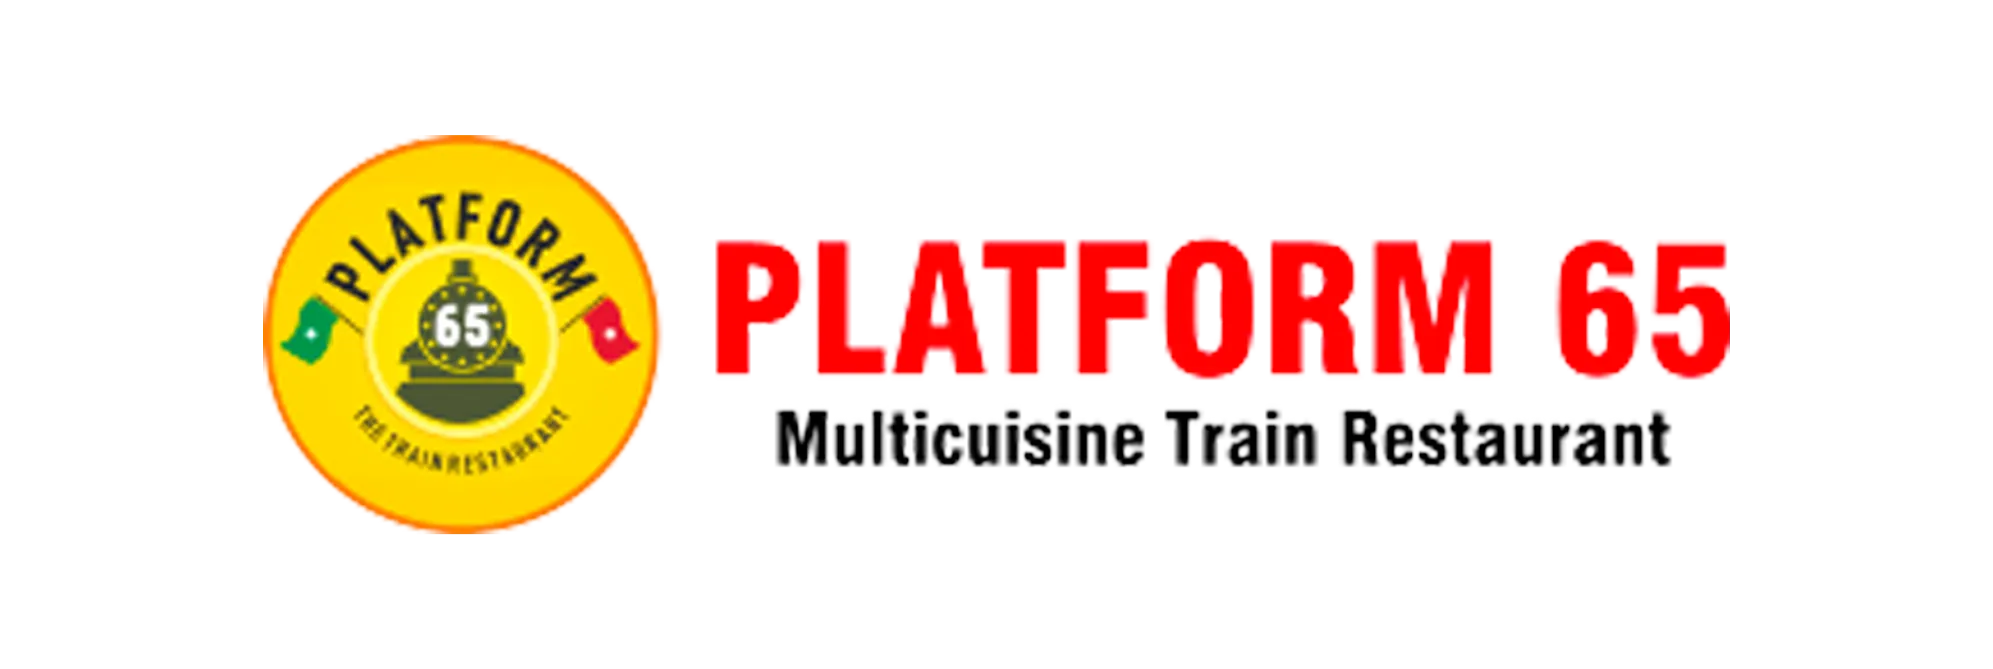 platform 65